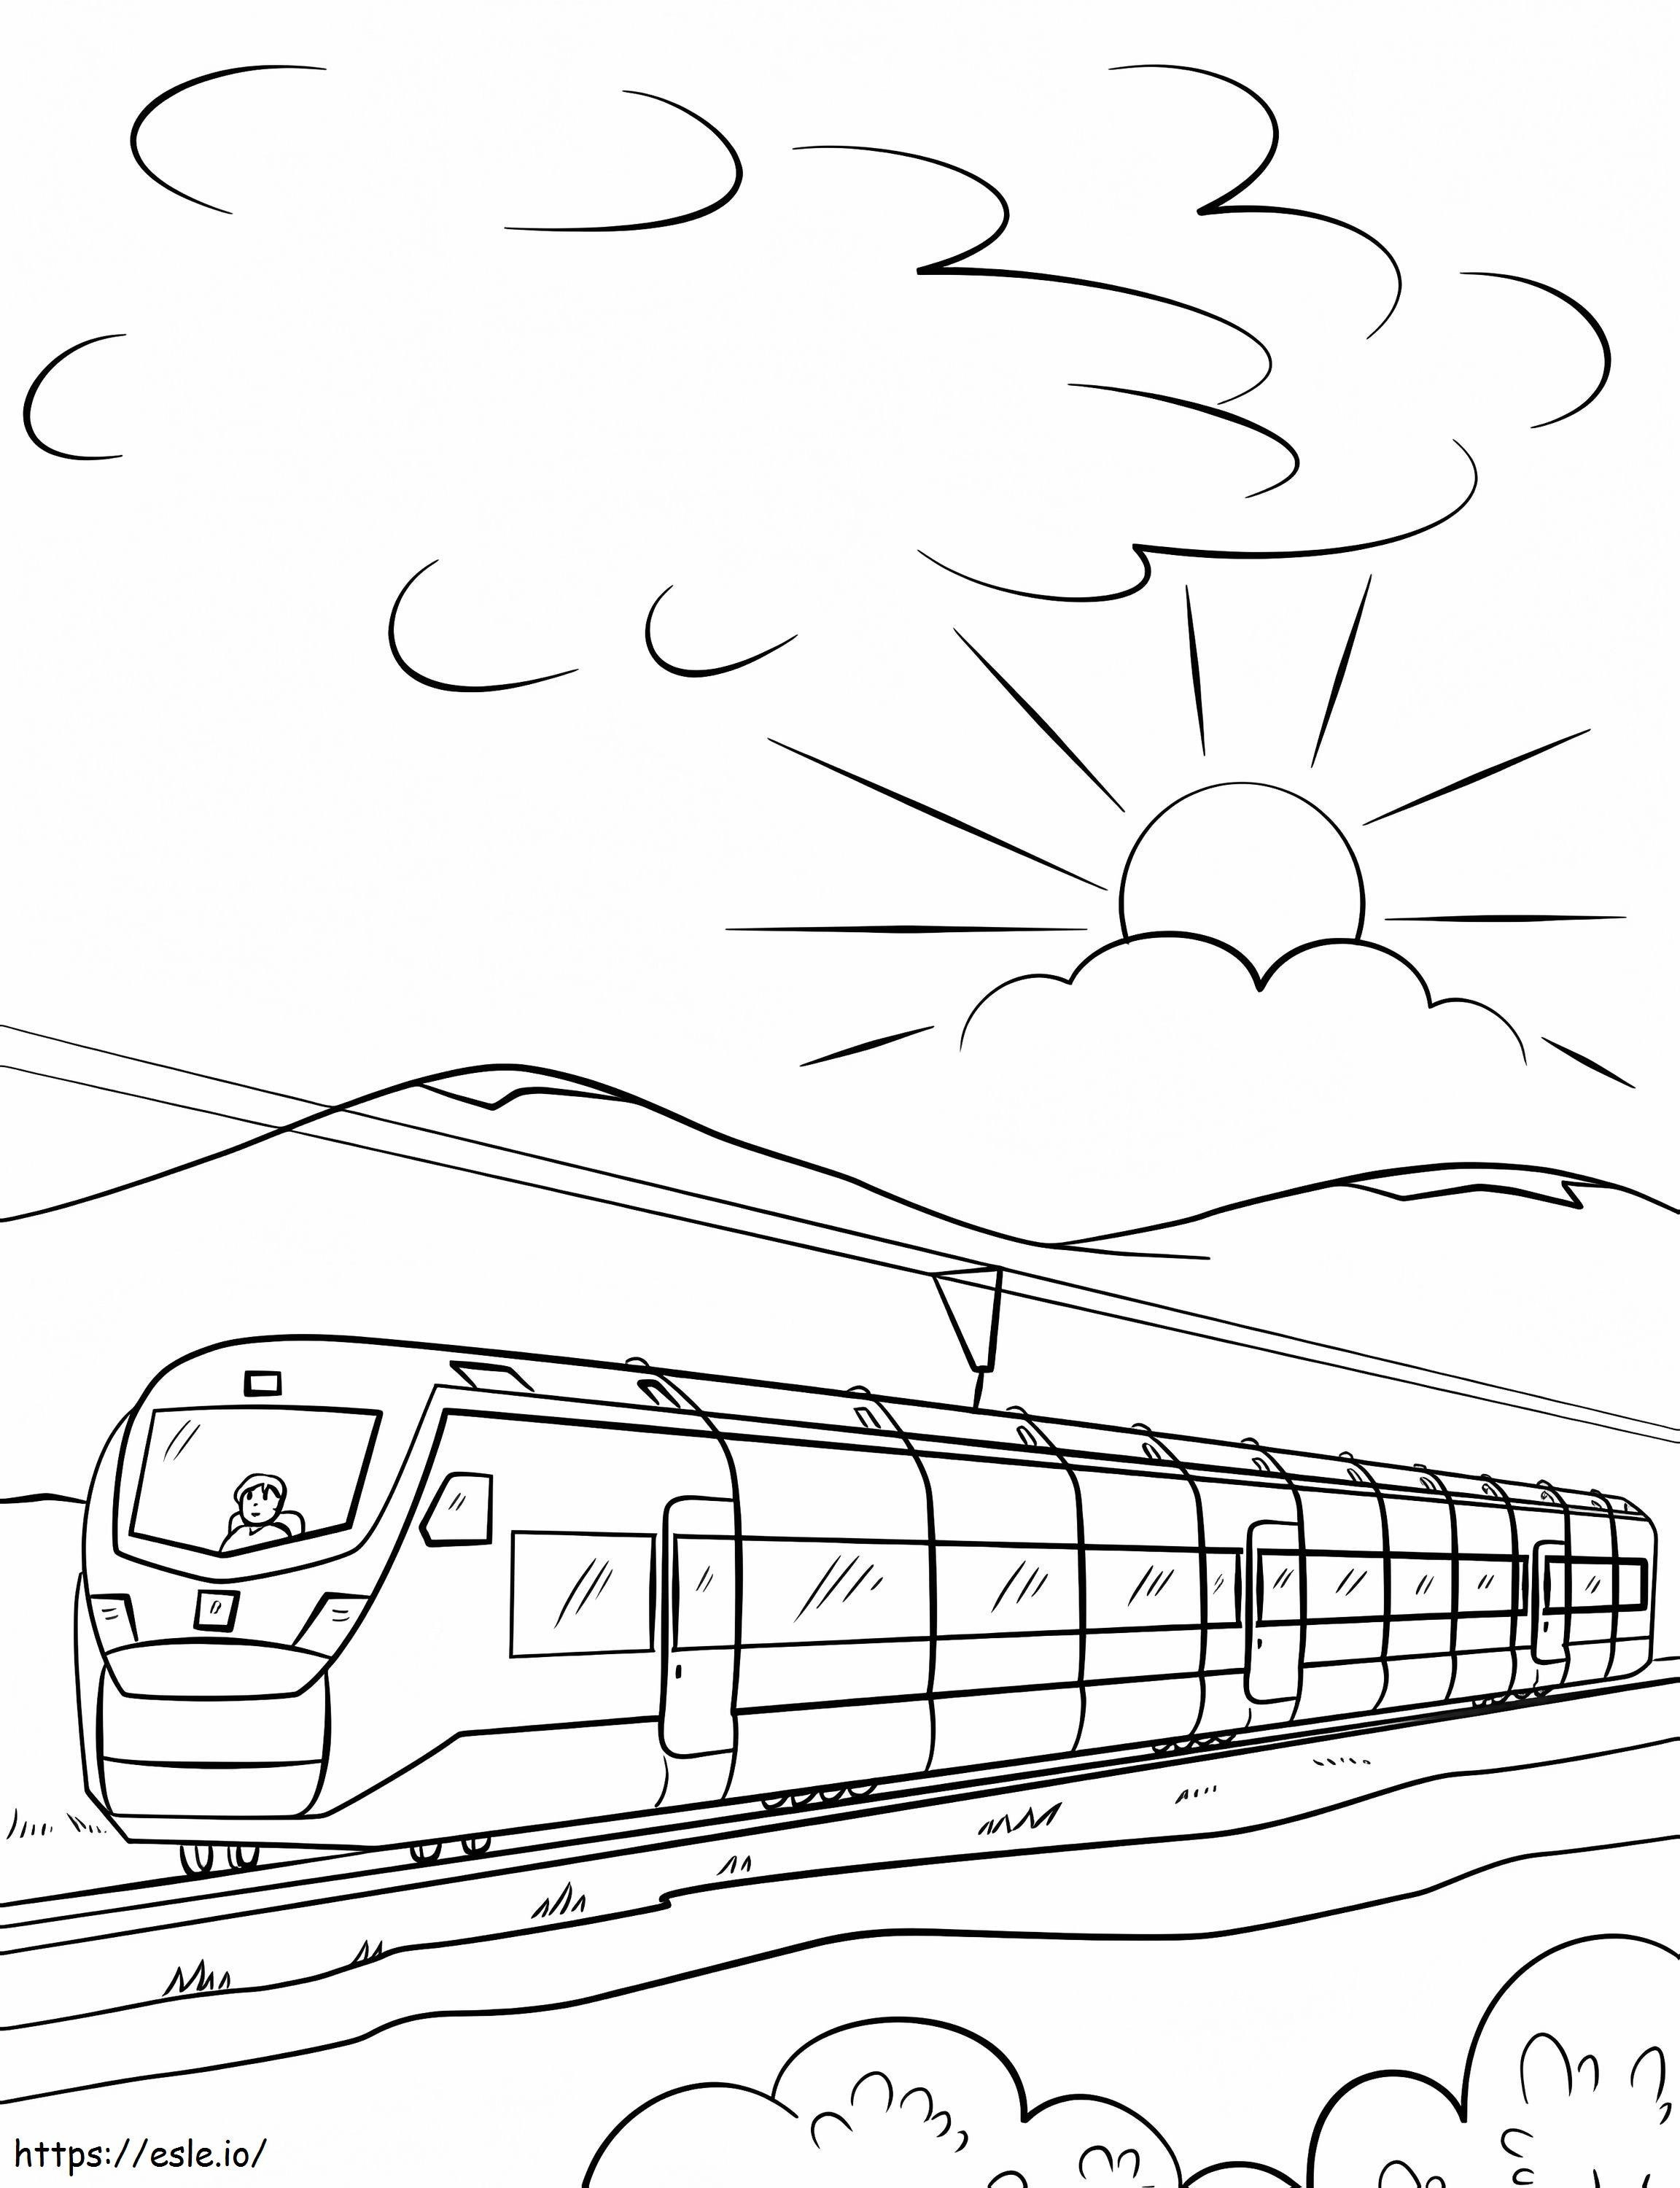 Şehirlerarası Yüksek Hızlı Tren boyama